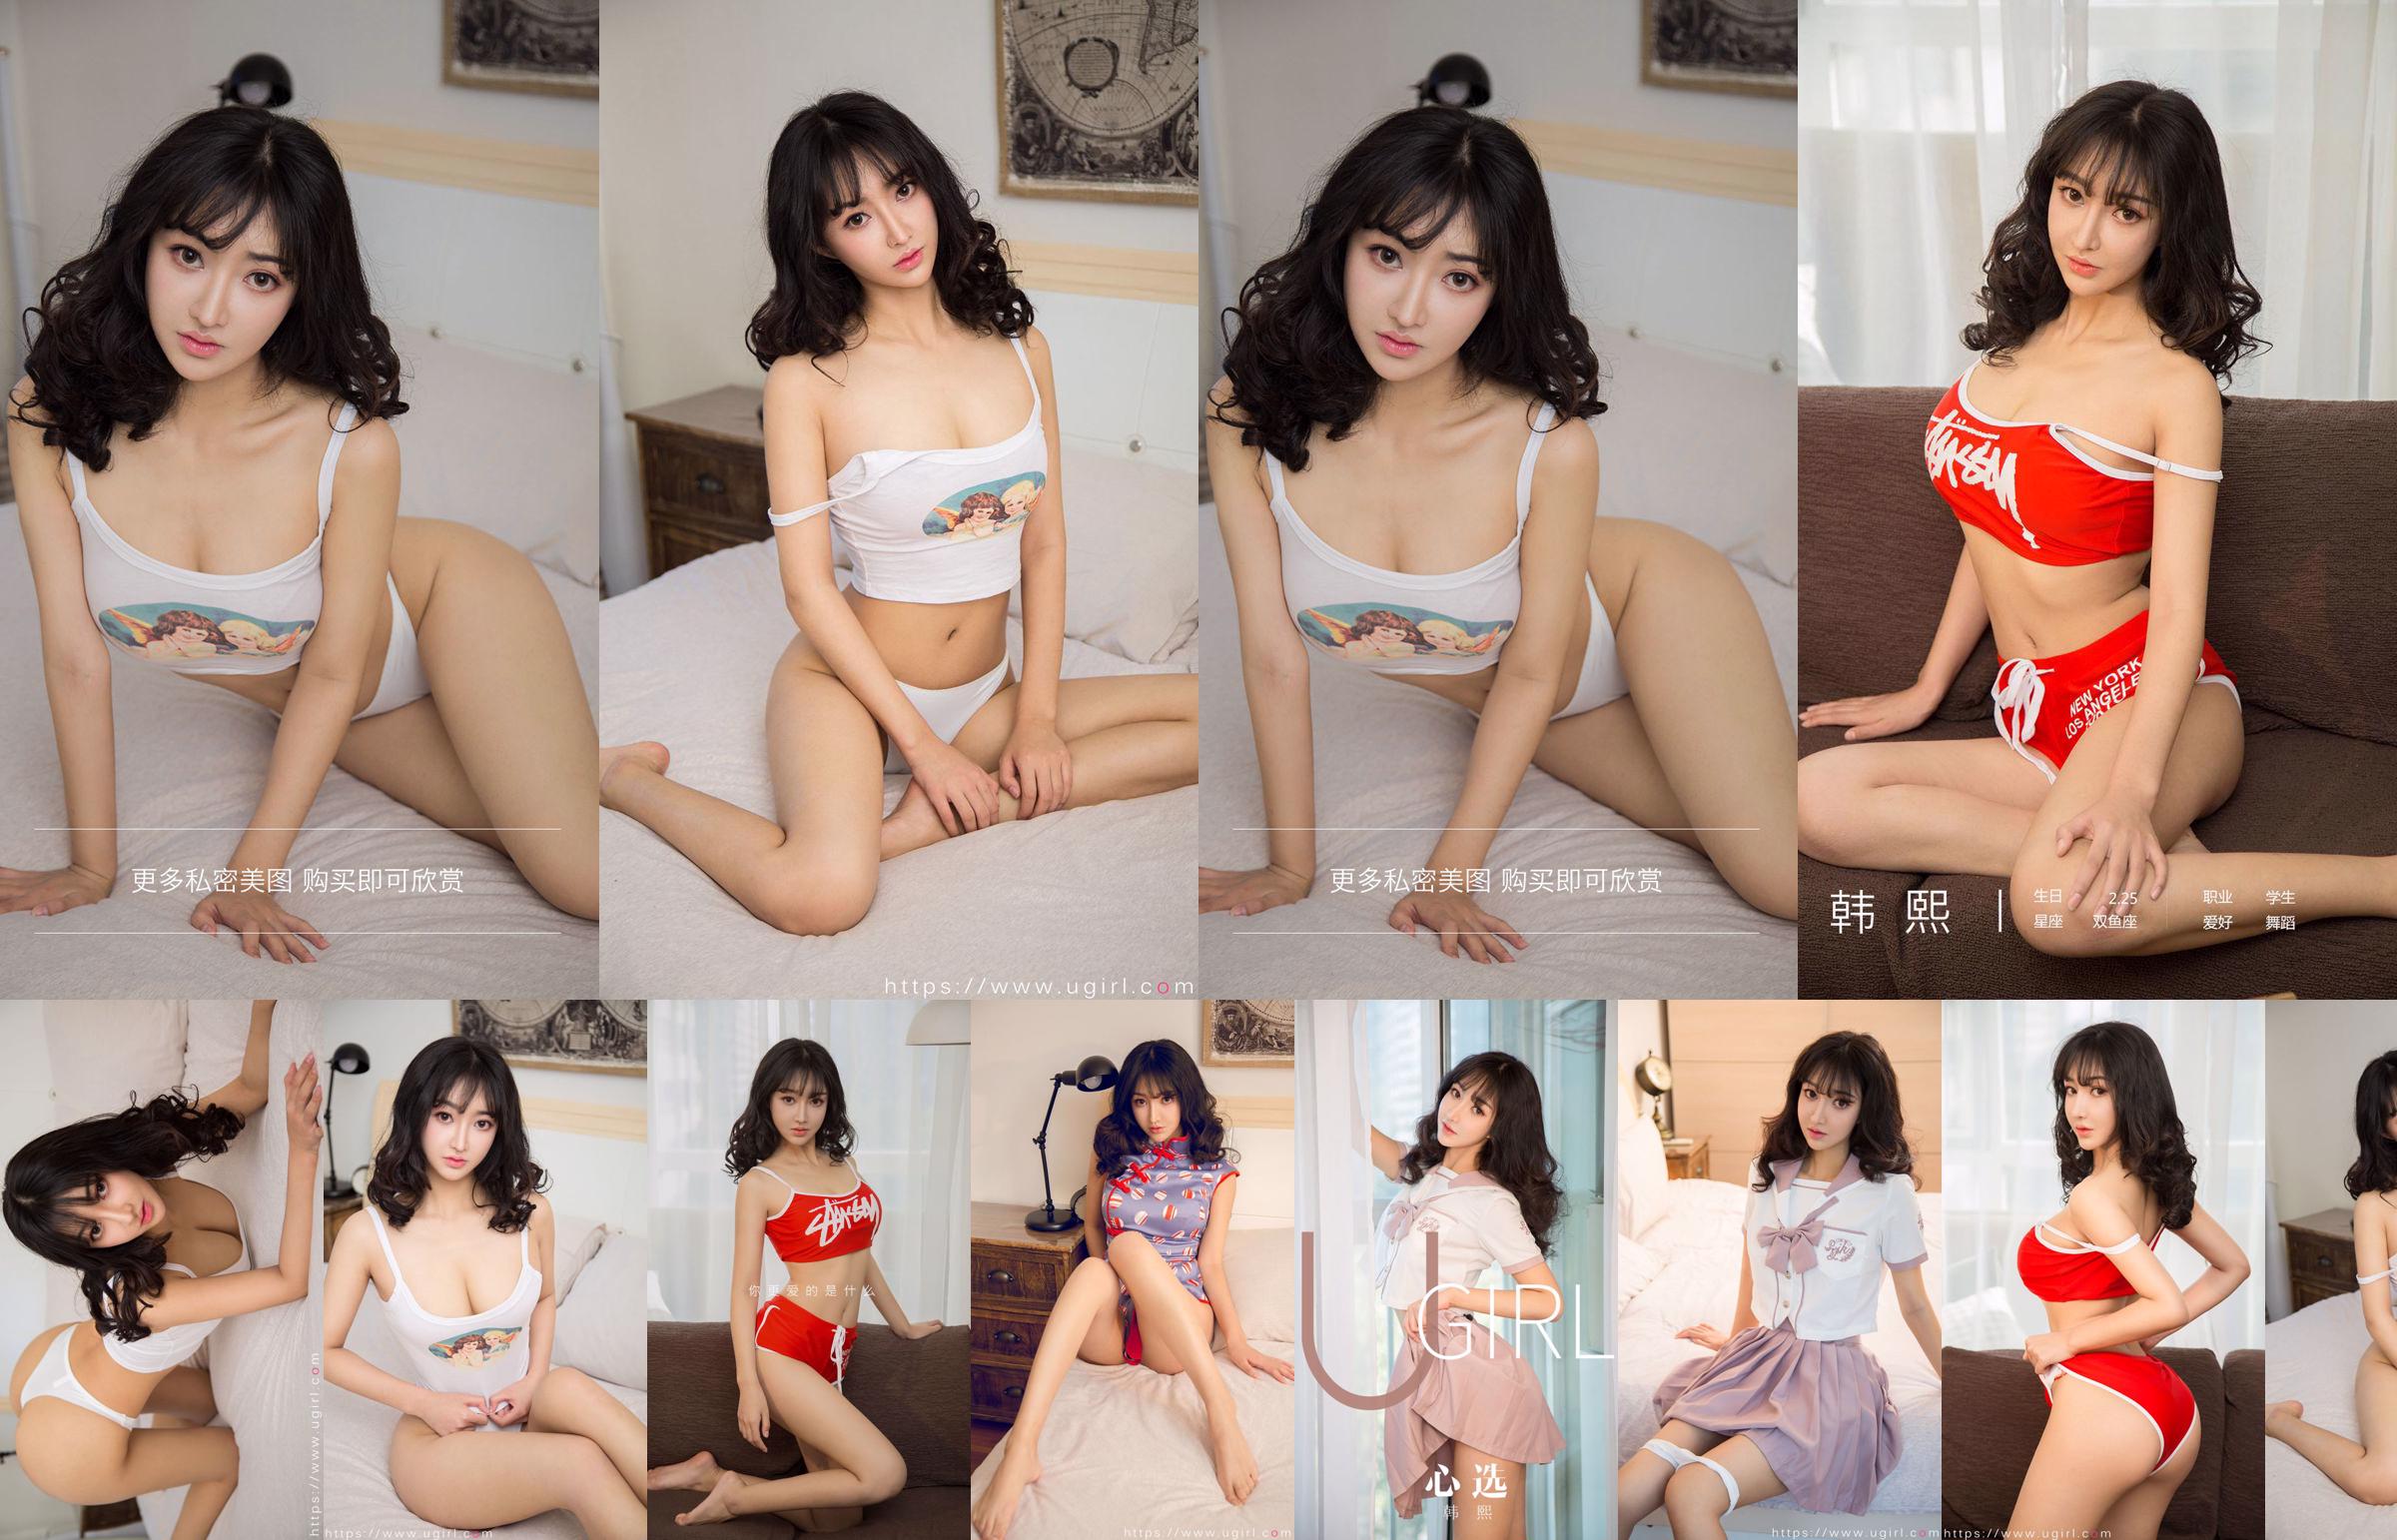 [Home Delivery WordGirls] No.812 Xi Shui Shui Beautiful Girl Trainee No.e3553b Page 5